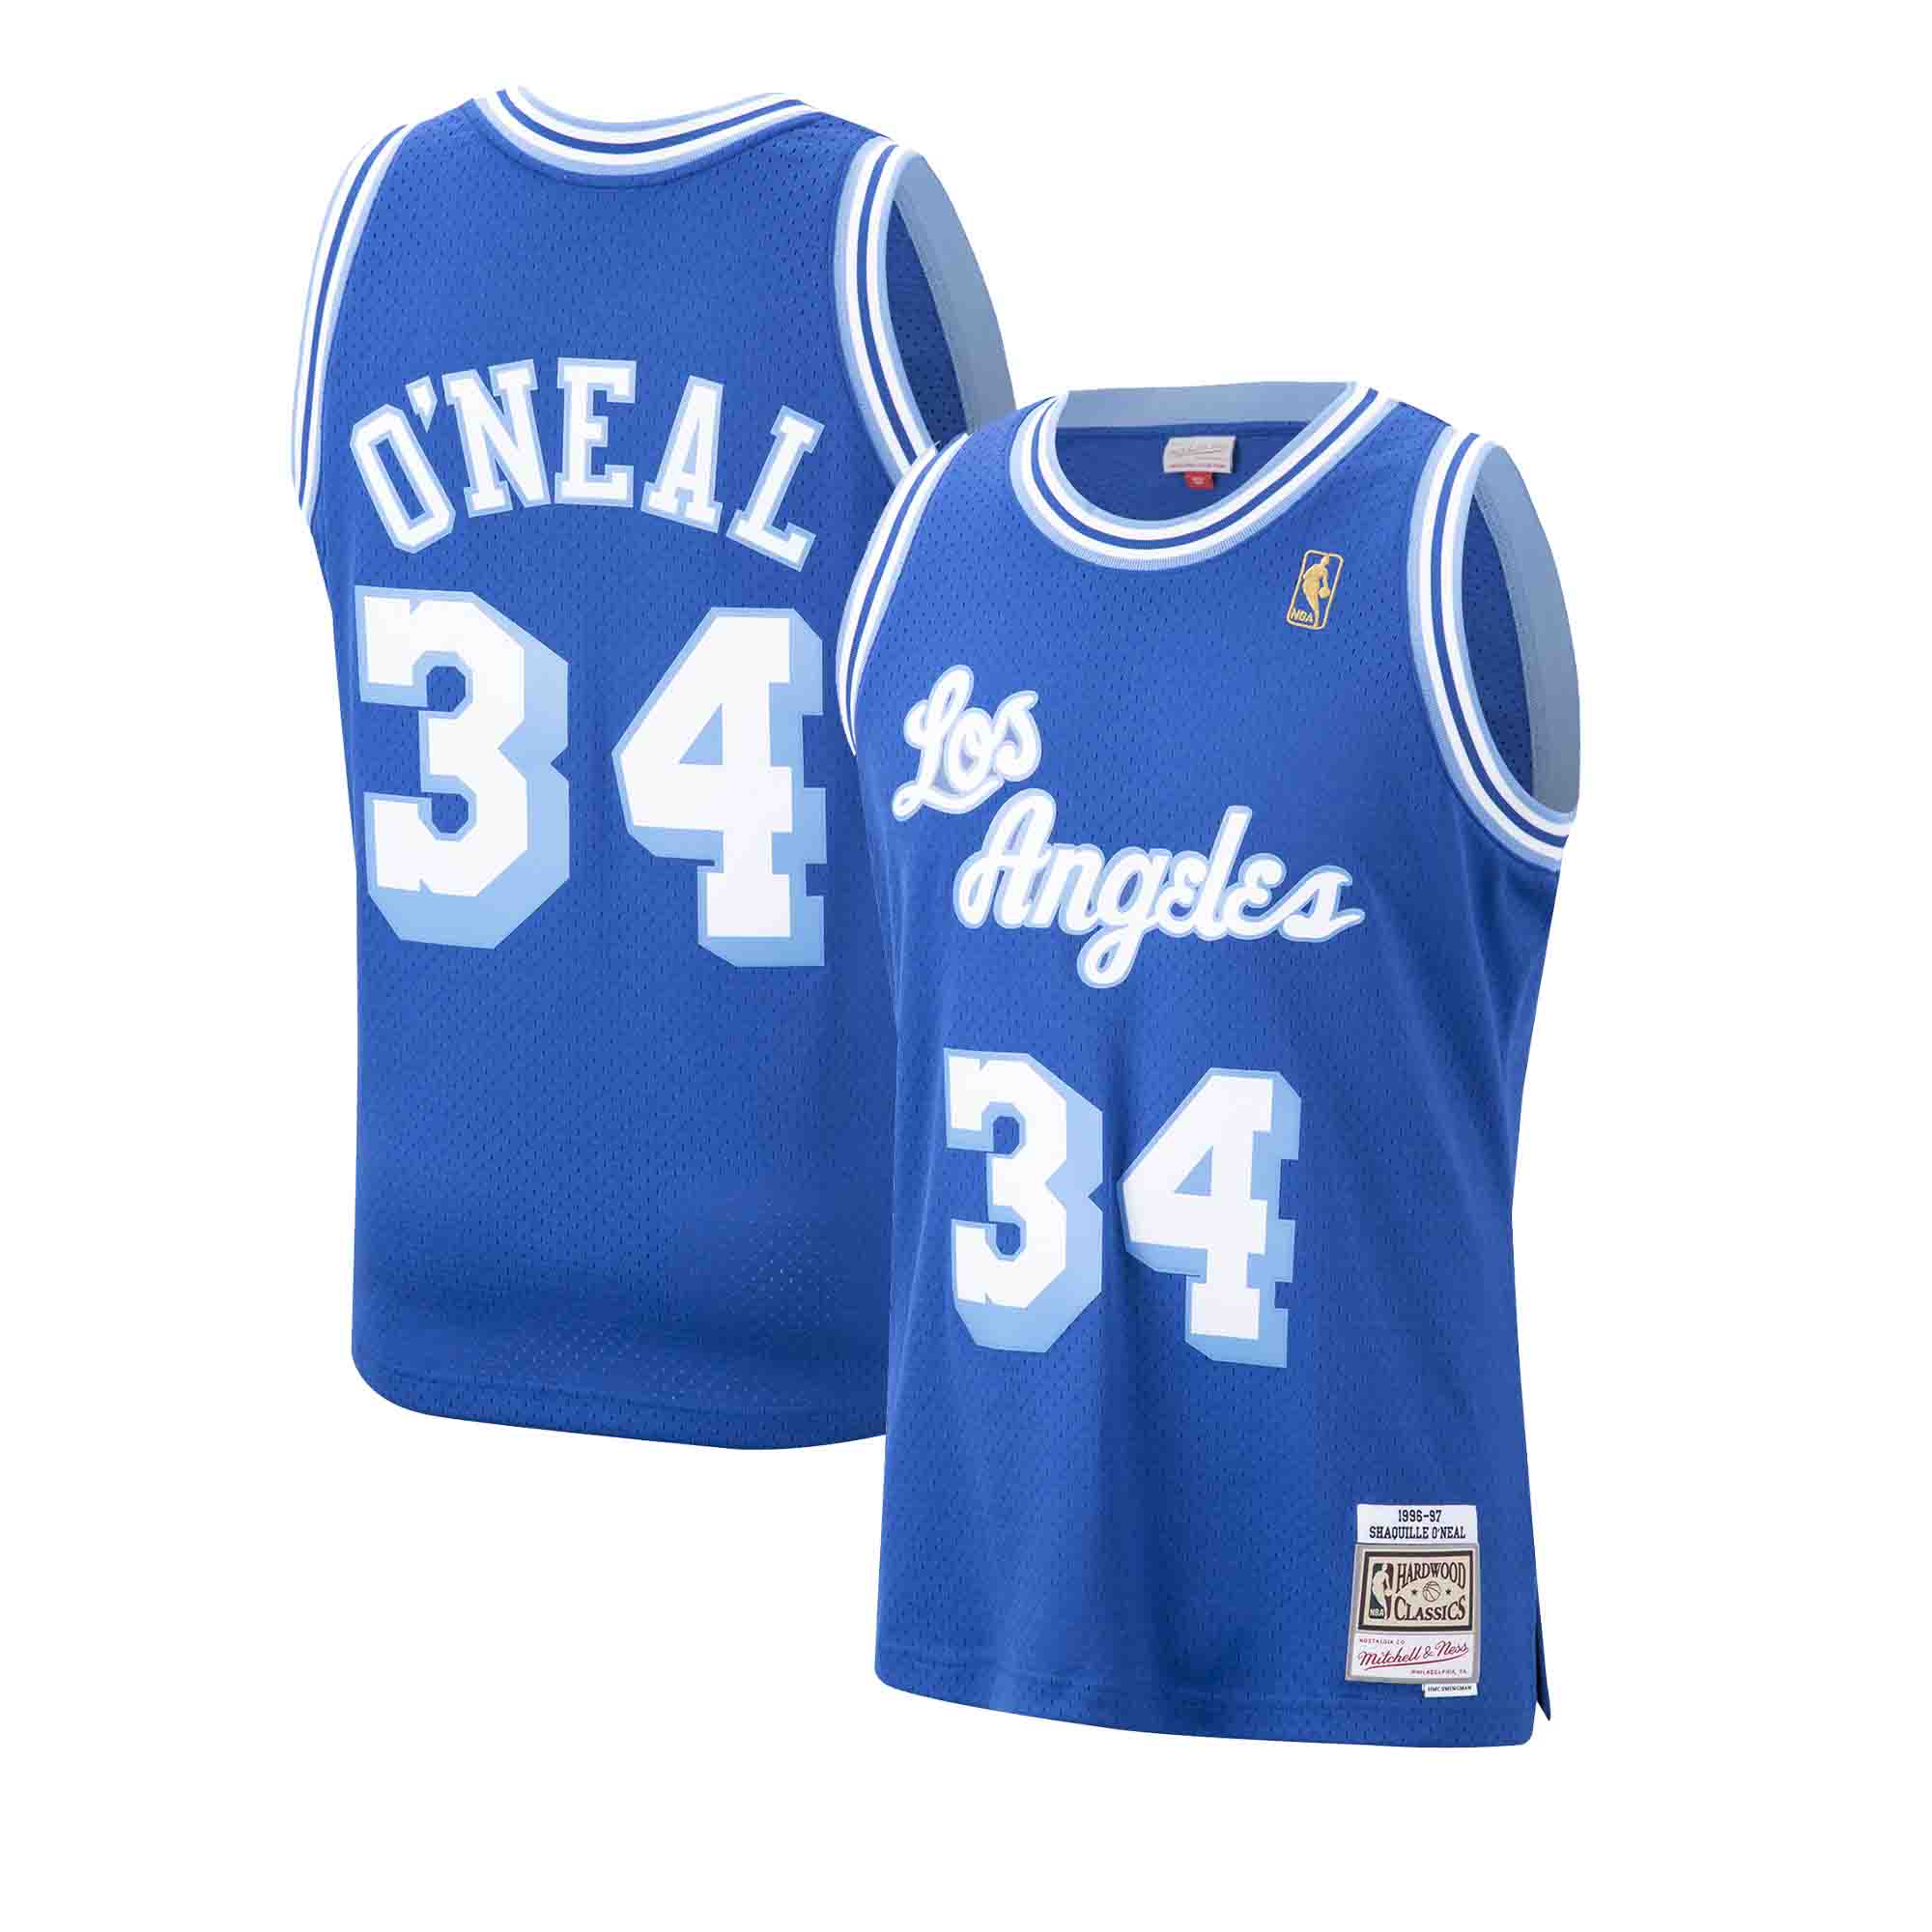 Jersey Los Angeles Lakers 1996-97 - Jerseys - Men's wear - Basketball wear